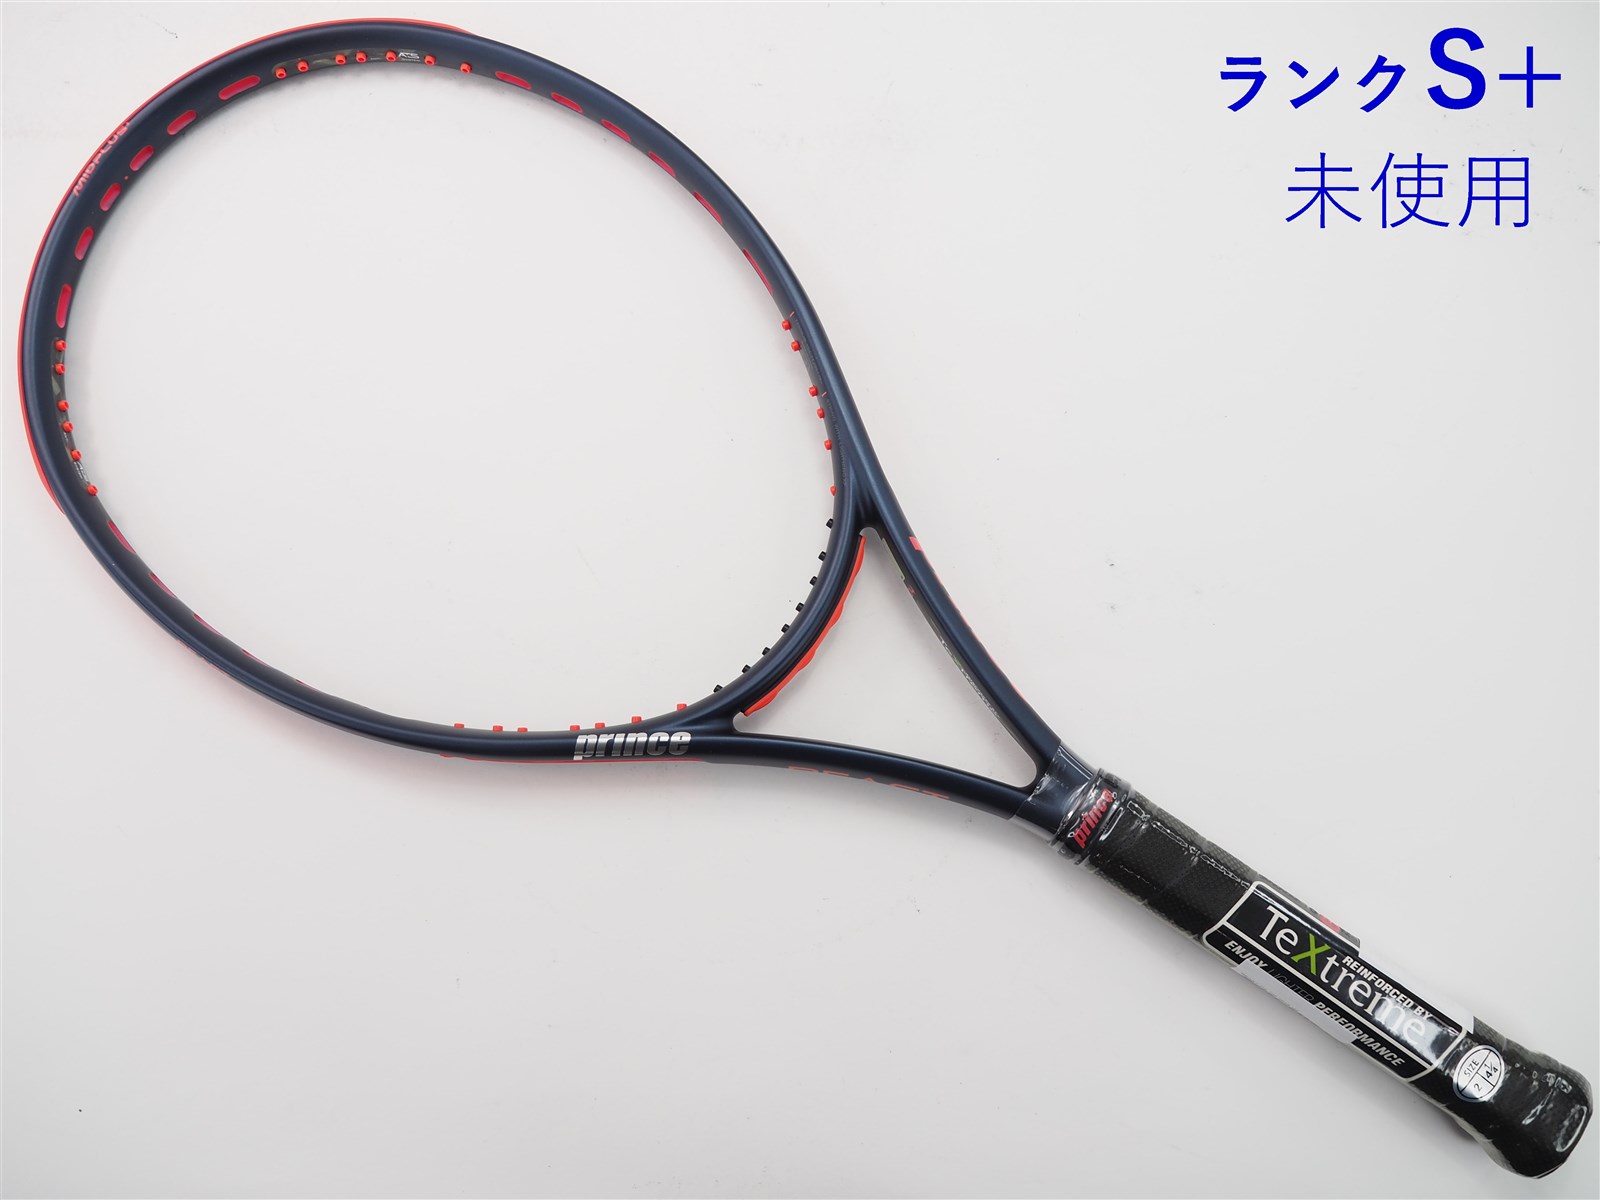 テニスラケット プリンス ビースト オースリー 104 2019年モデル (G2)PRINCE BEAST O3 104 2019